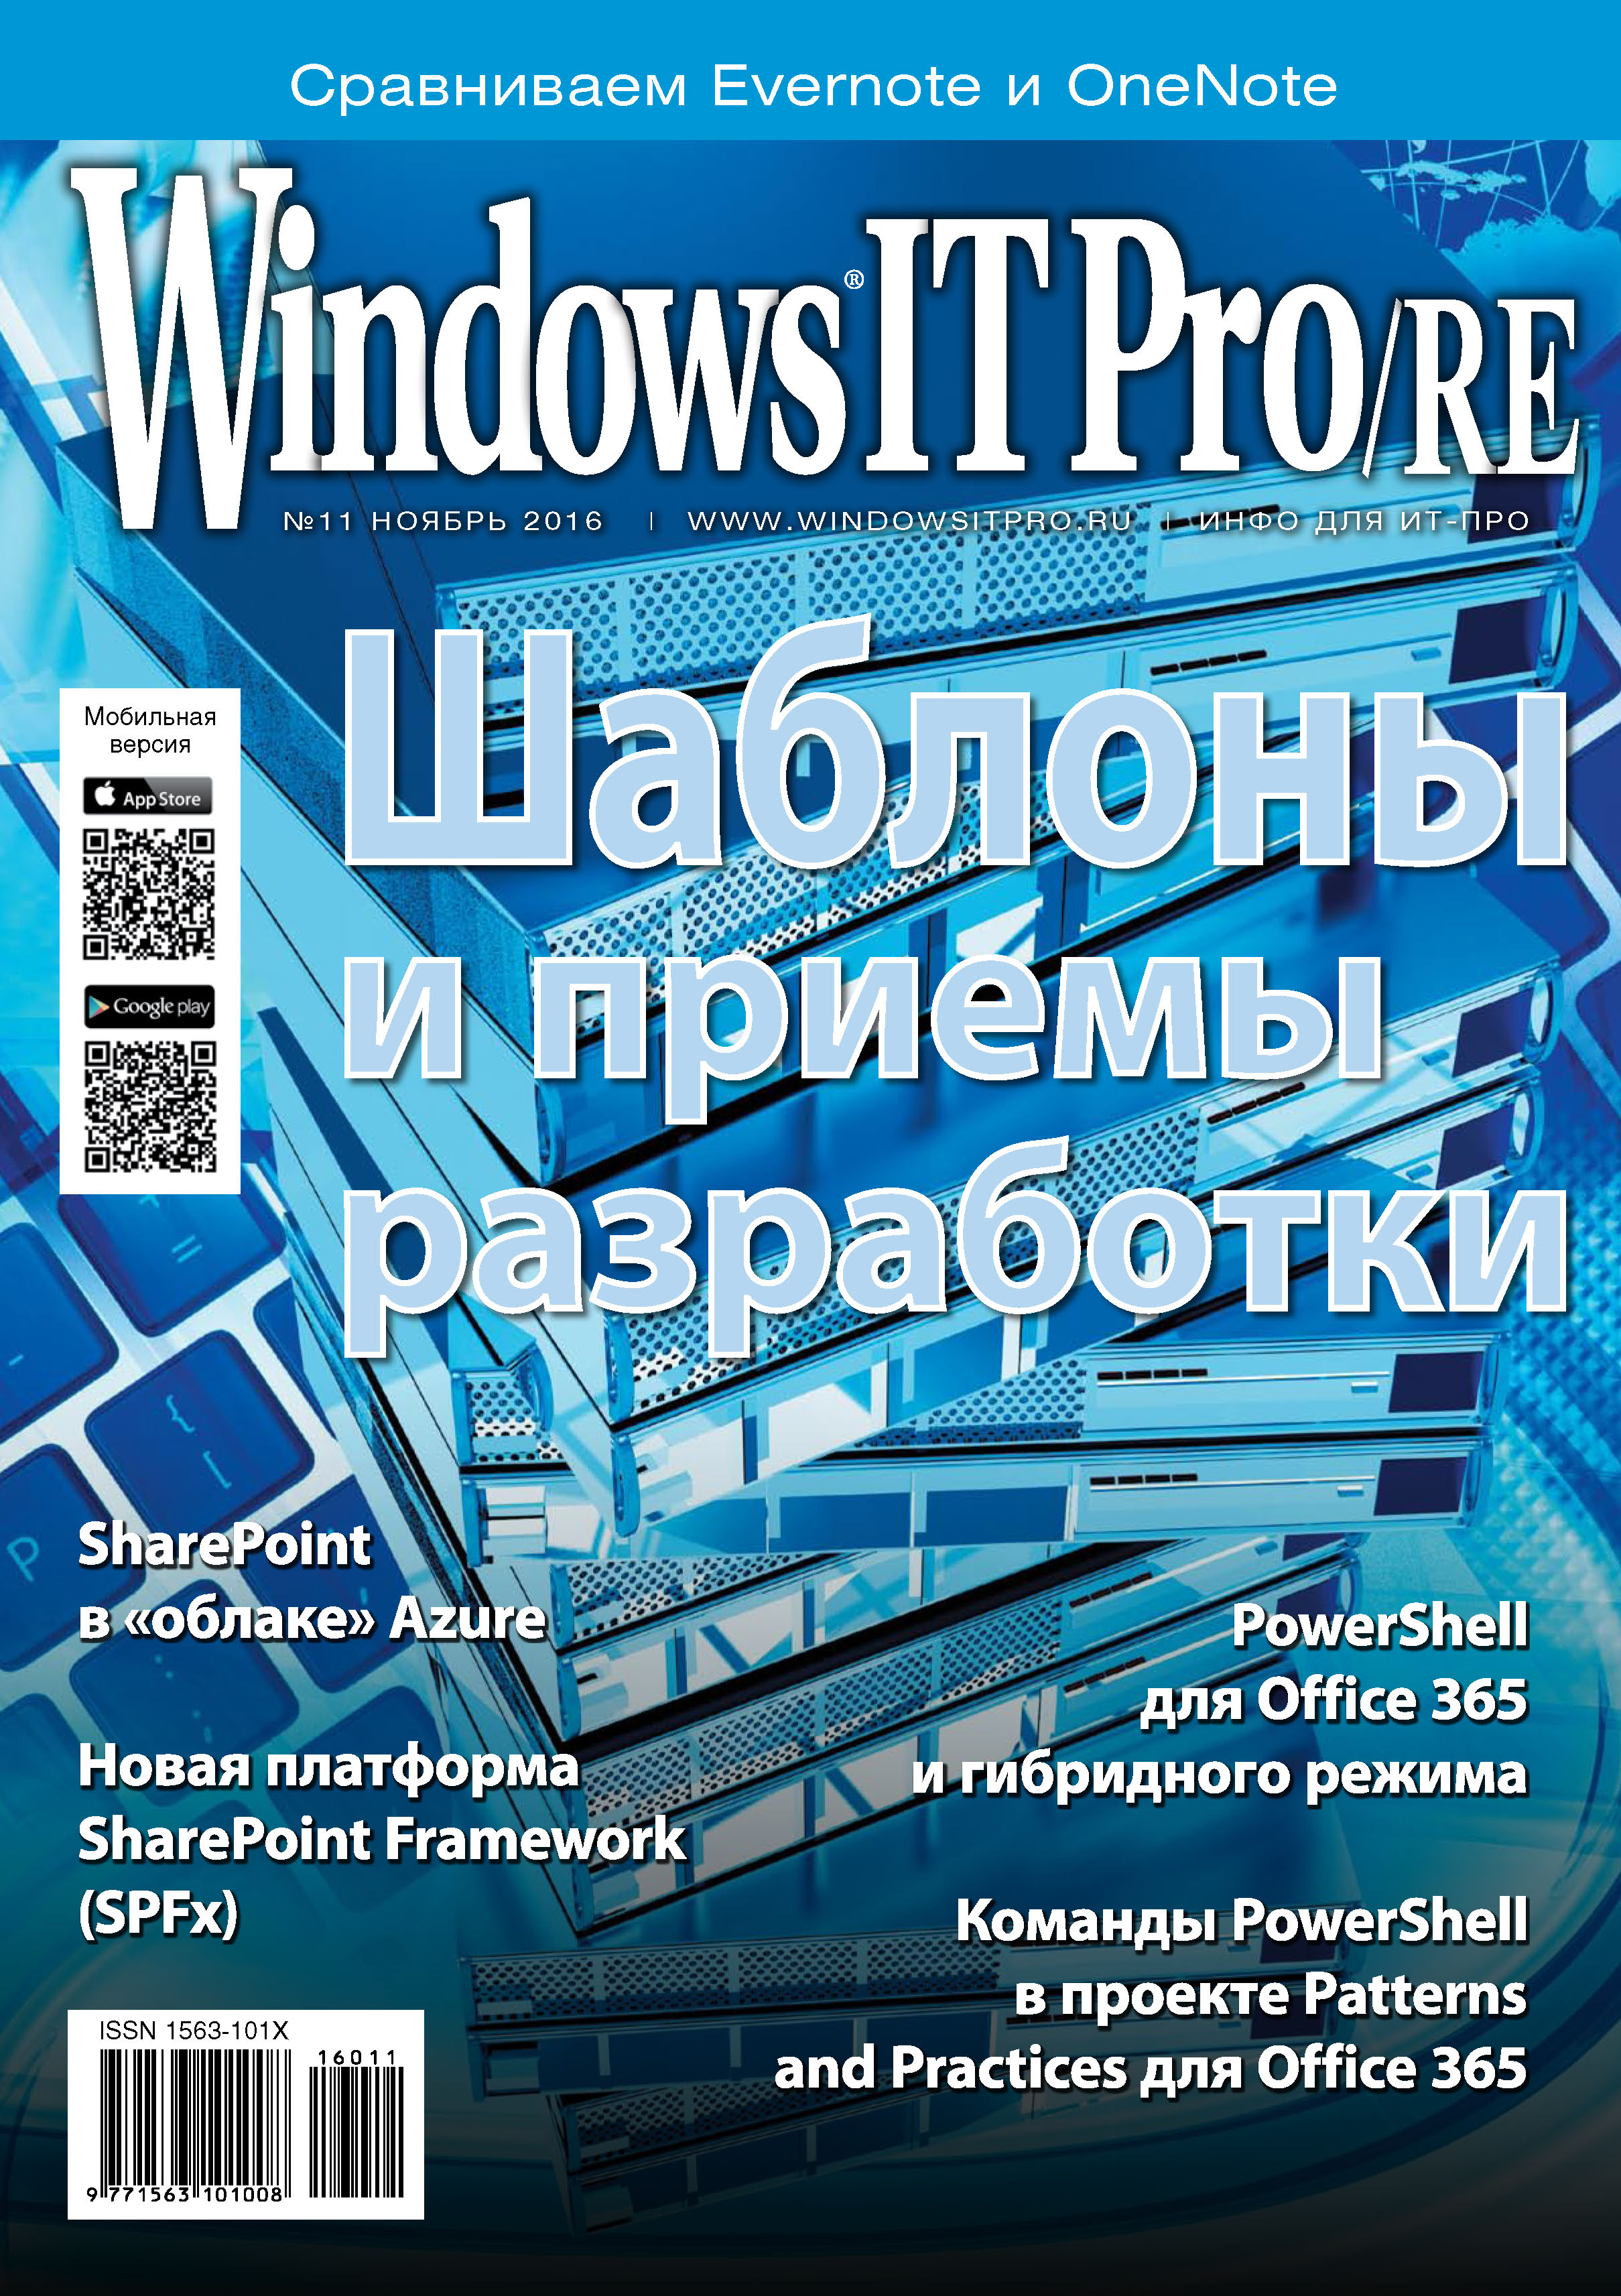 Книга Windows IT Pro 2016 Windows IT Pro/RE №11/2016 созданная Открытые системы может относится к жанру компьютерные журналы, ОС и сети, программы. Стоимость электронной книги Windows IT Pro/RE №11/2016 с идентификатором 22071981 составляет 484.00 руб.